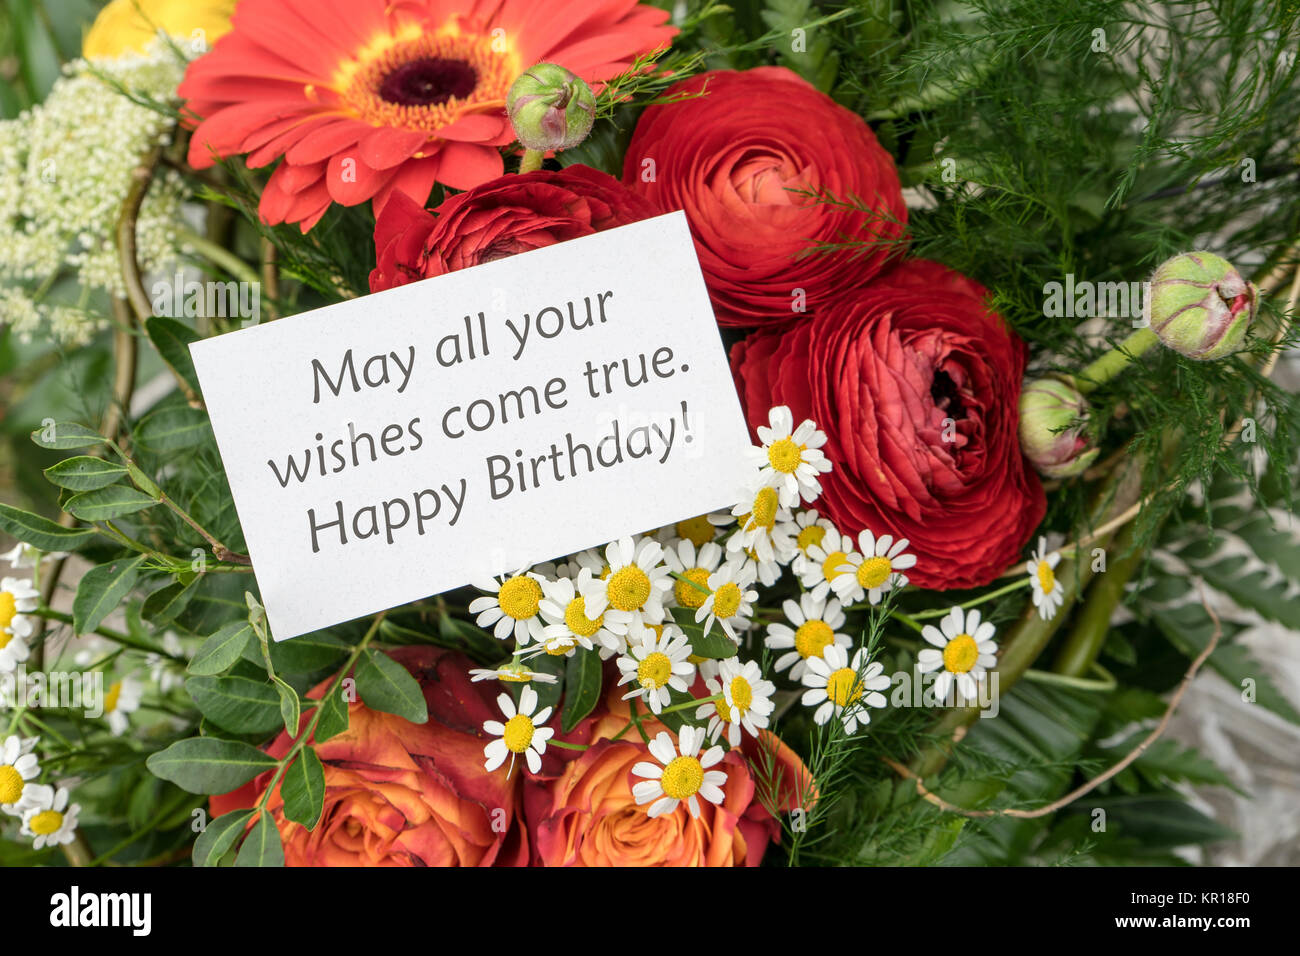 Englisch Grusskarte Geburtstag Mit Roten Blumen Stockfotografie Alamy